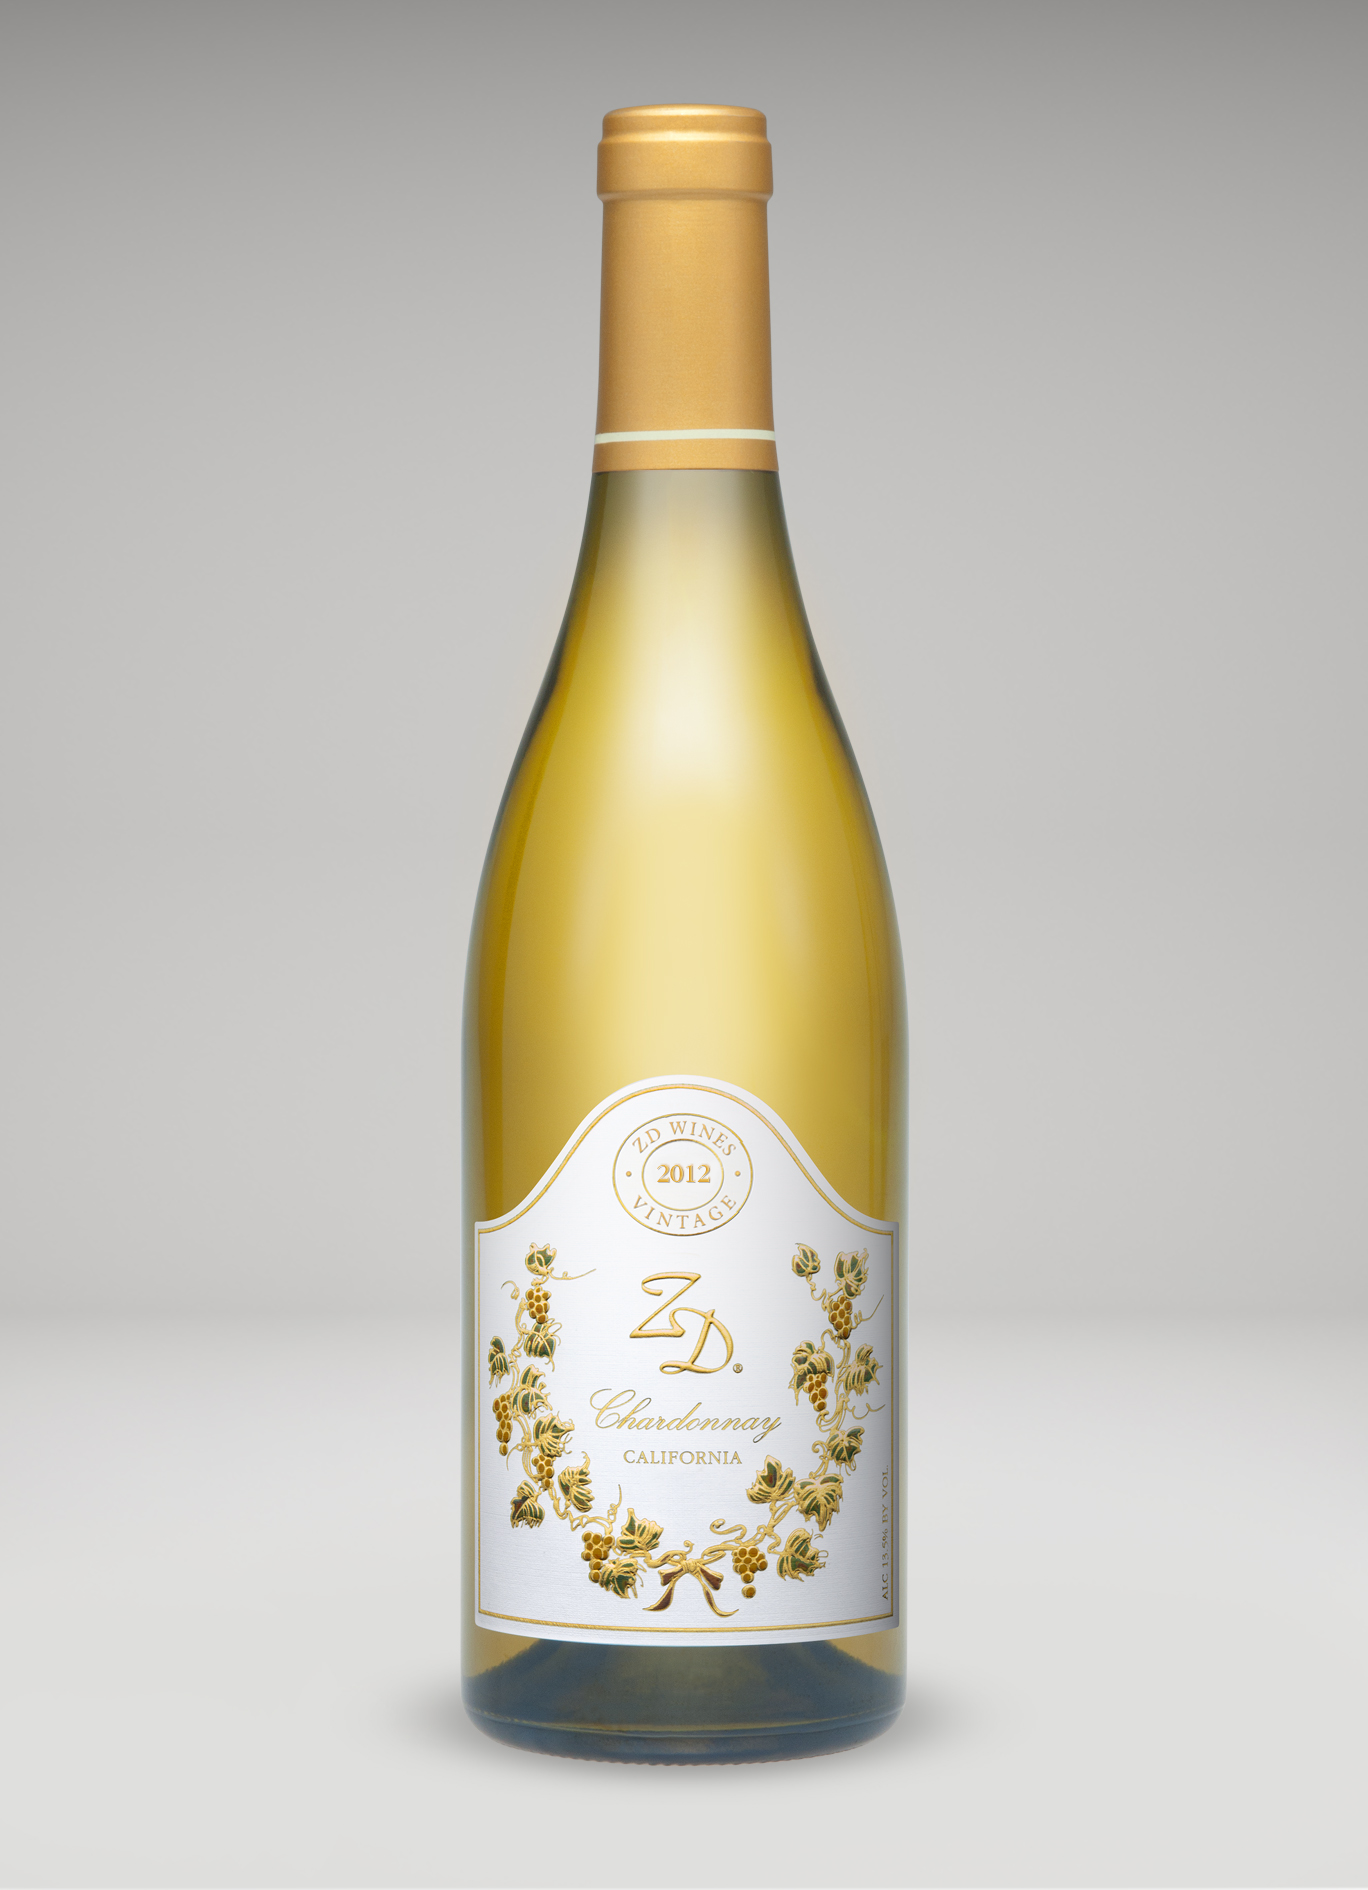 A bottle of 2012 ZD Chardonnay, CA